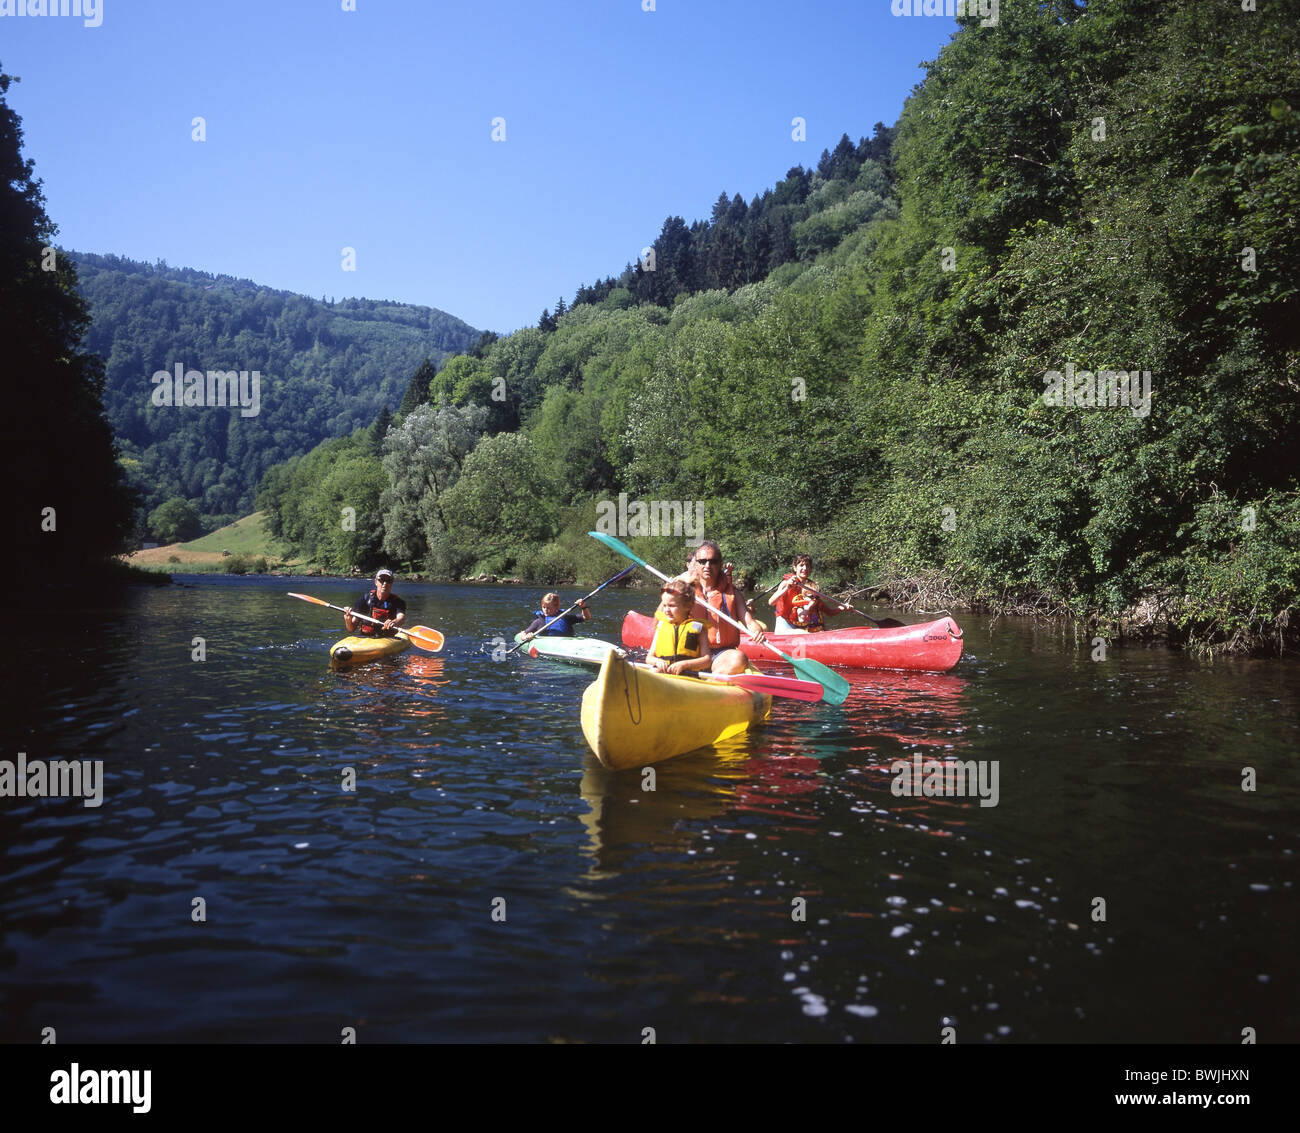 Familie Fluss Doubs Kanu Freizeit Sommer Wassersport Wassersport, Paddel  Boot Kanton Jura Großbrit Stockfotografie - Alamy